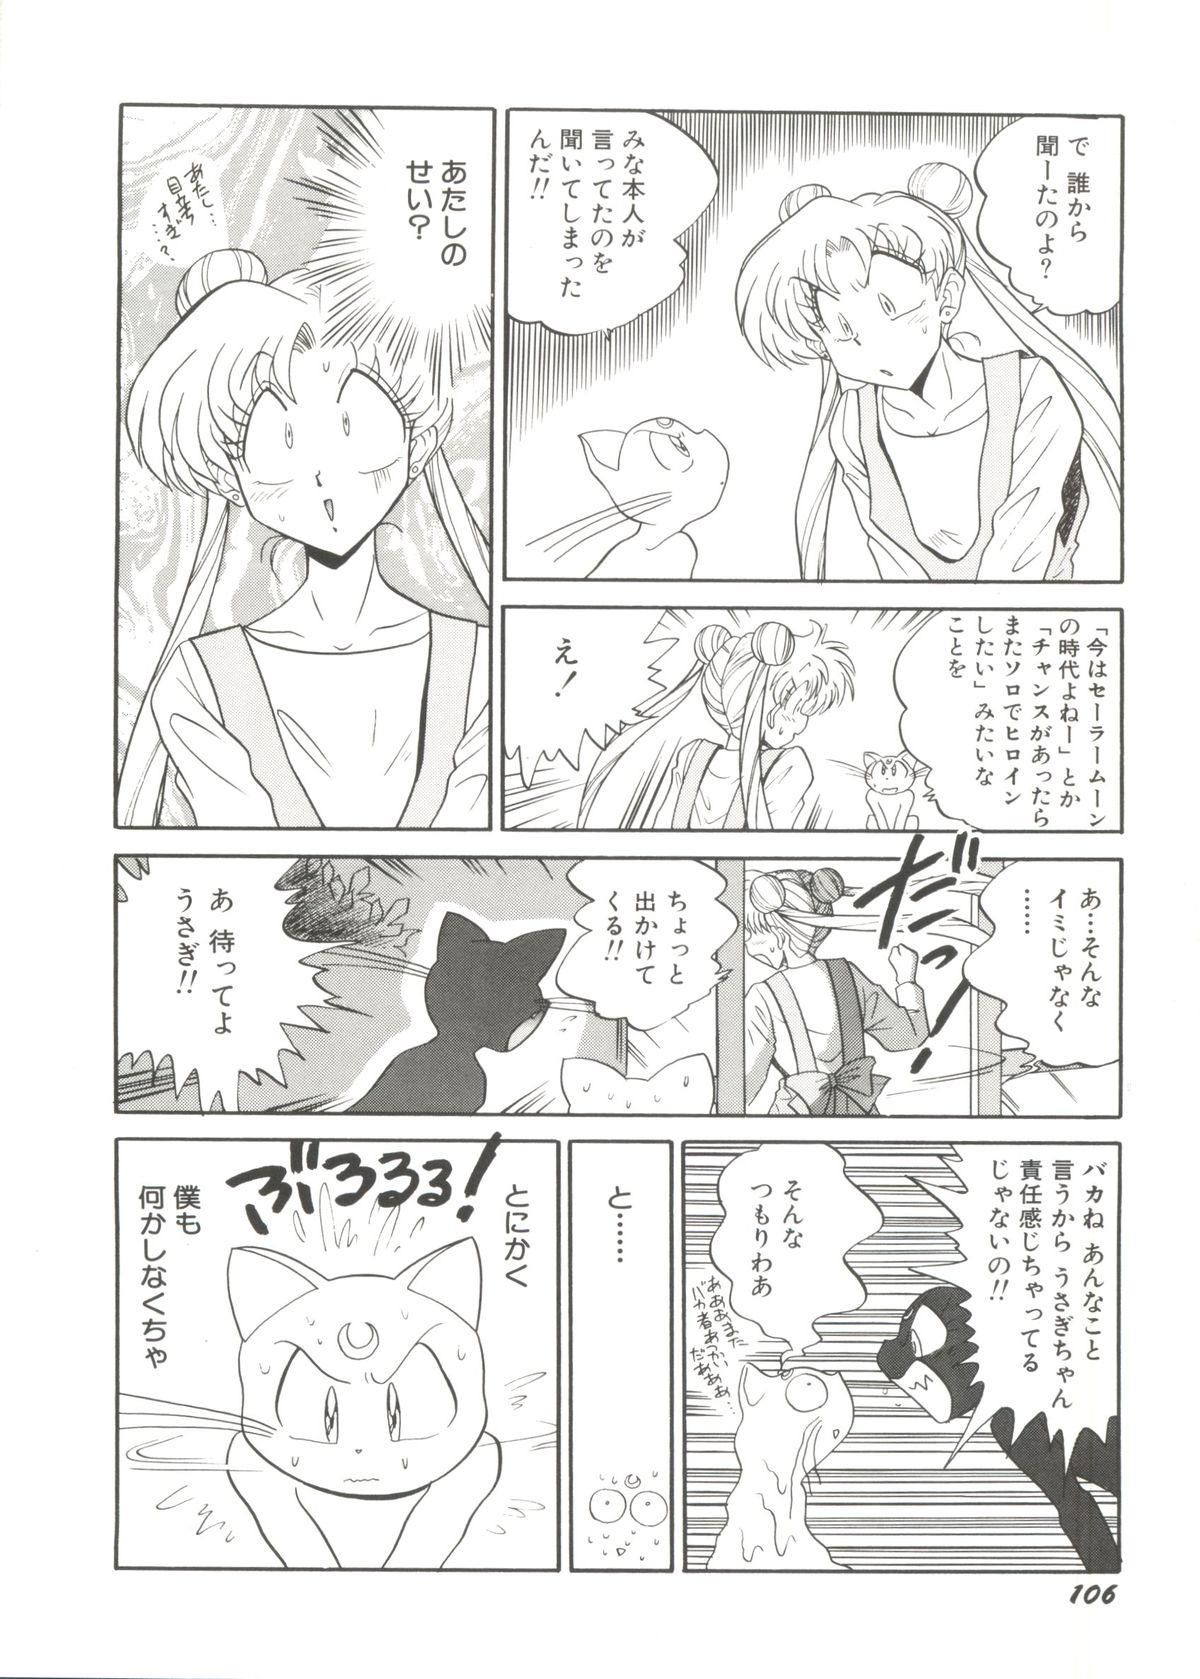 Doujin Anthology Bishoujo Gumi 1 107